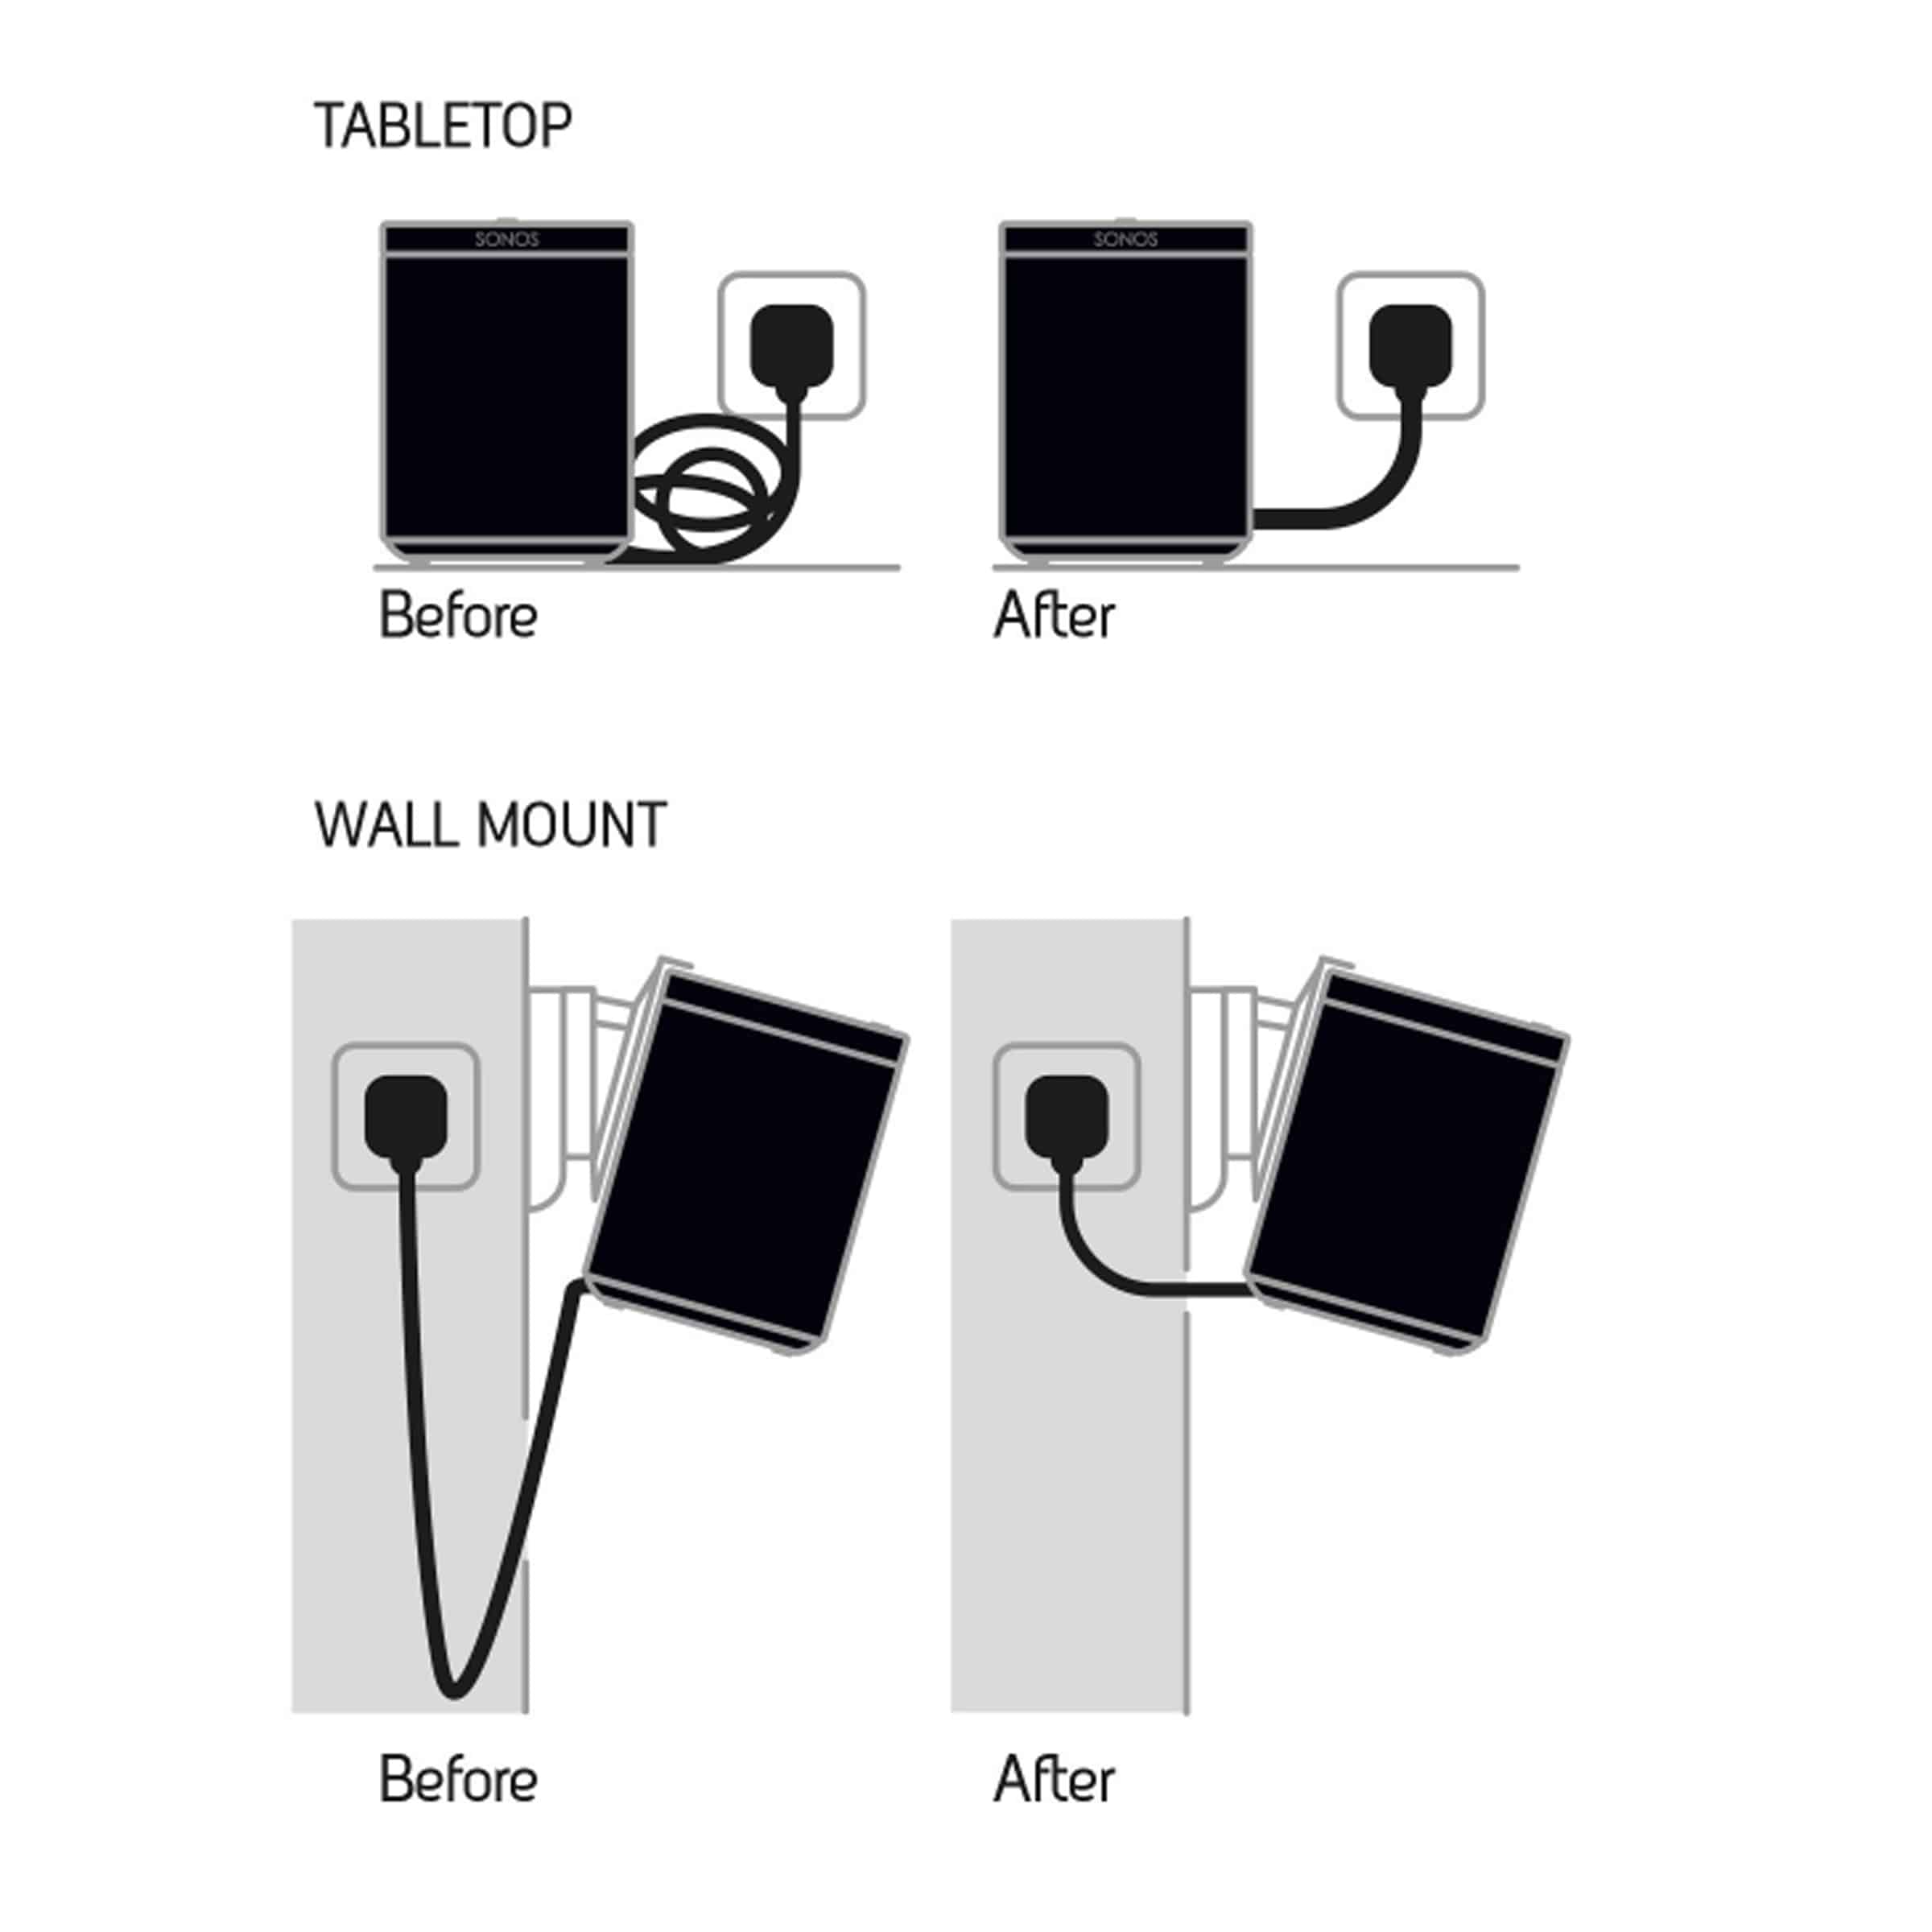 Veel gevaarlijke situaties verkoper Schouderophalend SONOS PLAY:1 Kabel te te lang? 35cm kabel voor de Sonos Play:1